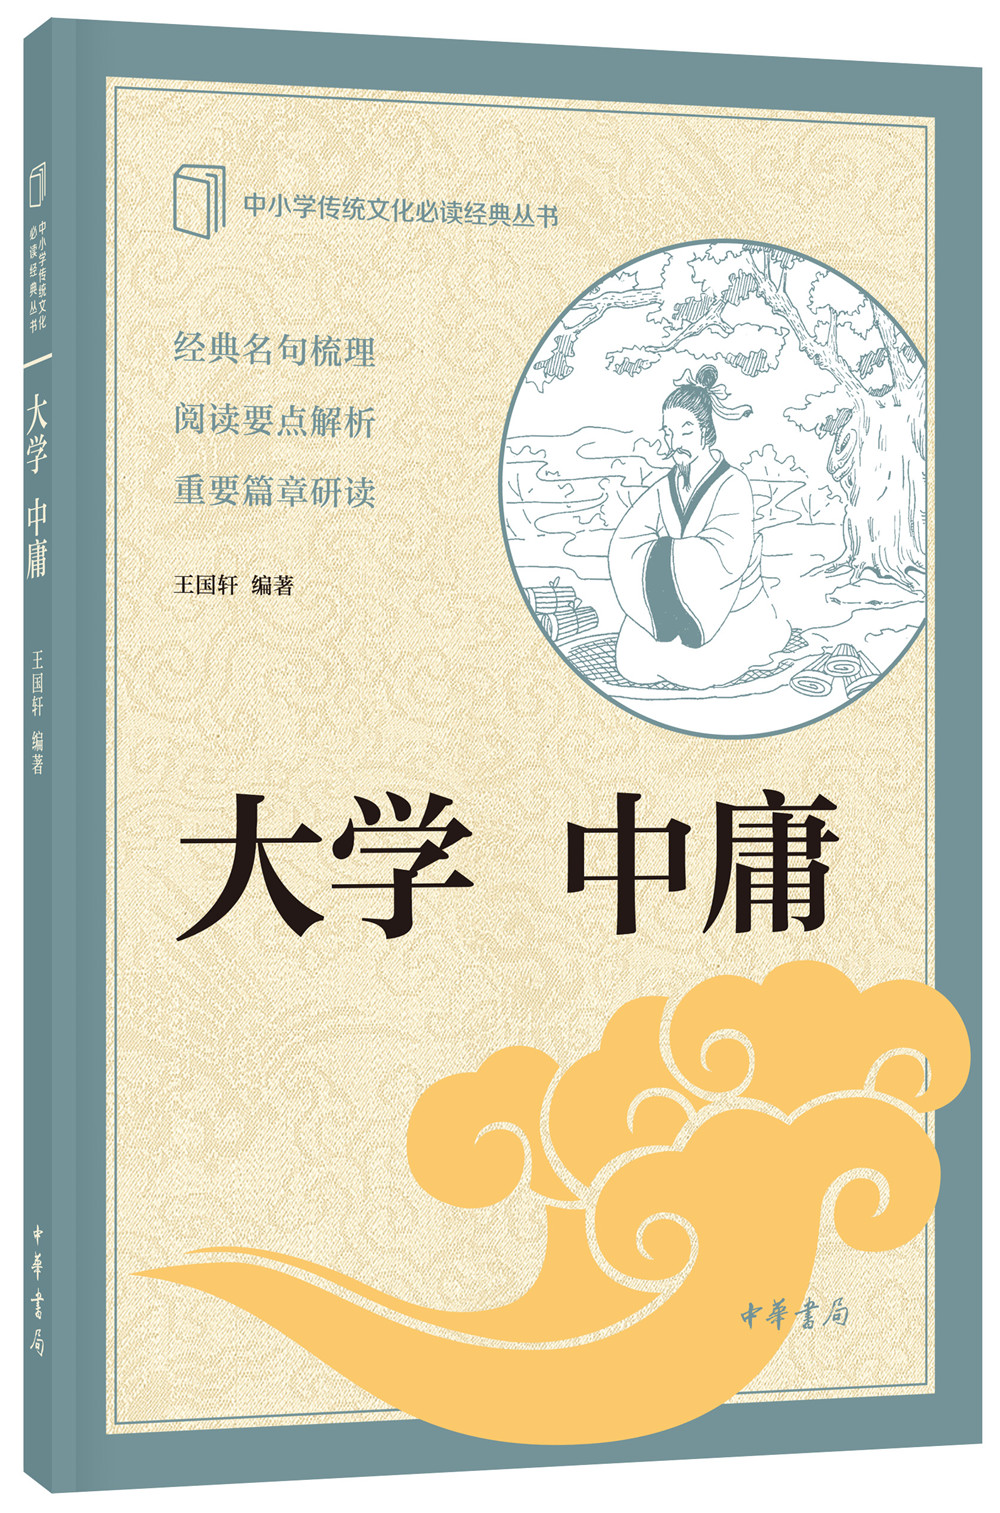 大学中庸 中华书局出版中小学传统文化必读经典